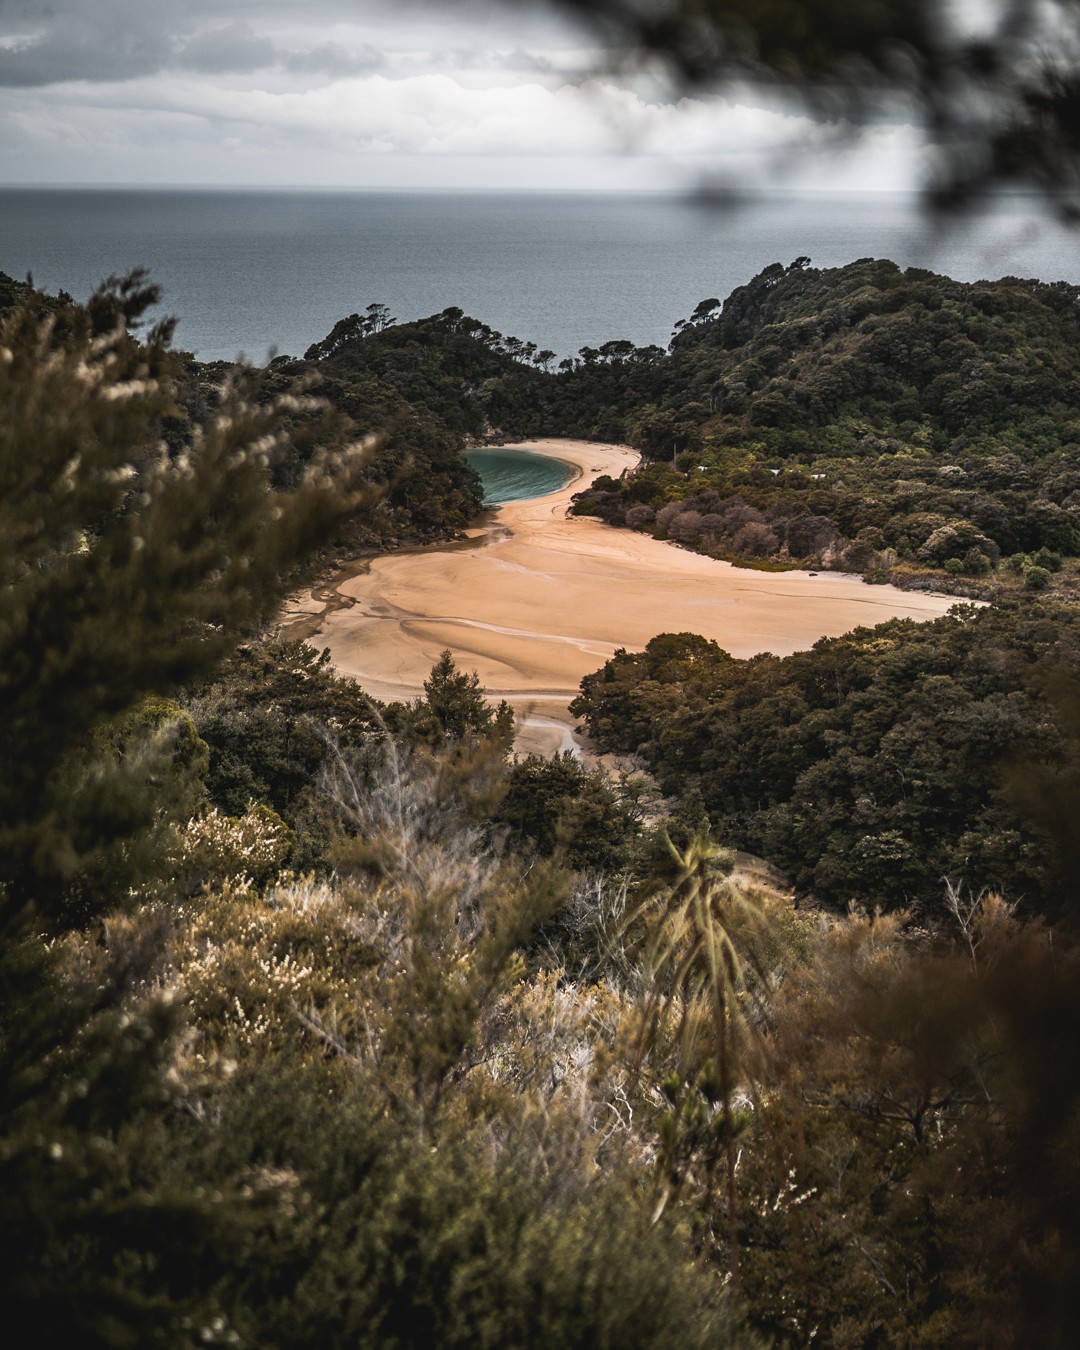 😍 Nouvelle-Zélande, Abel Tasman ⠀⠀⠀⠀⠀⠀⠀⠀⠀
⠀⠀⠀⠀⠀⠀⠀⠀⠀
Si vous deviez partir sur ce bout de sable pour le week-end. Quel serait la première chose que vous mettriez dans votre sac à dos ? 🤔😄⠀⠀⠀⠀⠀⠀⠀⠀⠀
⠀⠀⠀⠀⠀⠀⠀⠀⠀
Bon weekend à tous ! 😘⠀⠀⠀⠀⠀⠀⠀⠀⠀
⠀⠀⠀⠀⠀⠀⠀⠀⠀
Jeff 😉